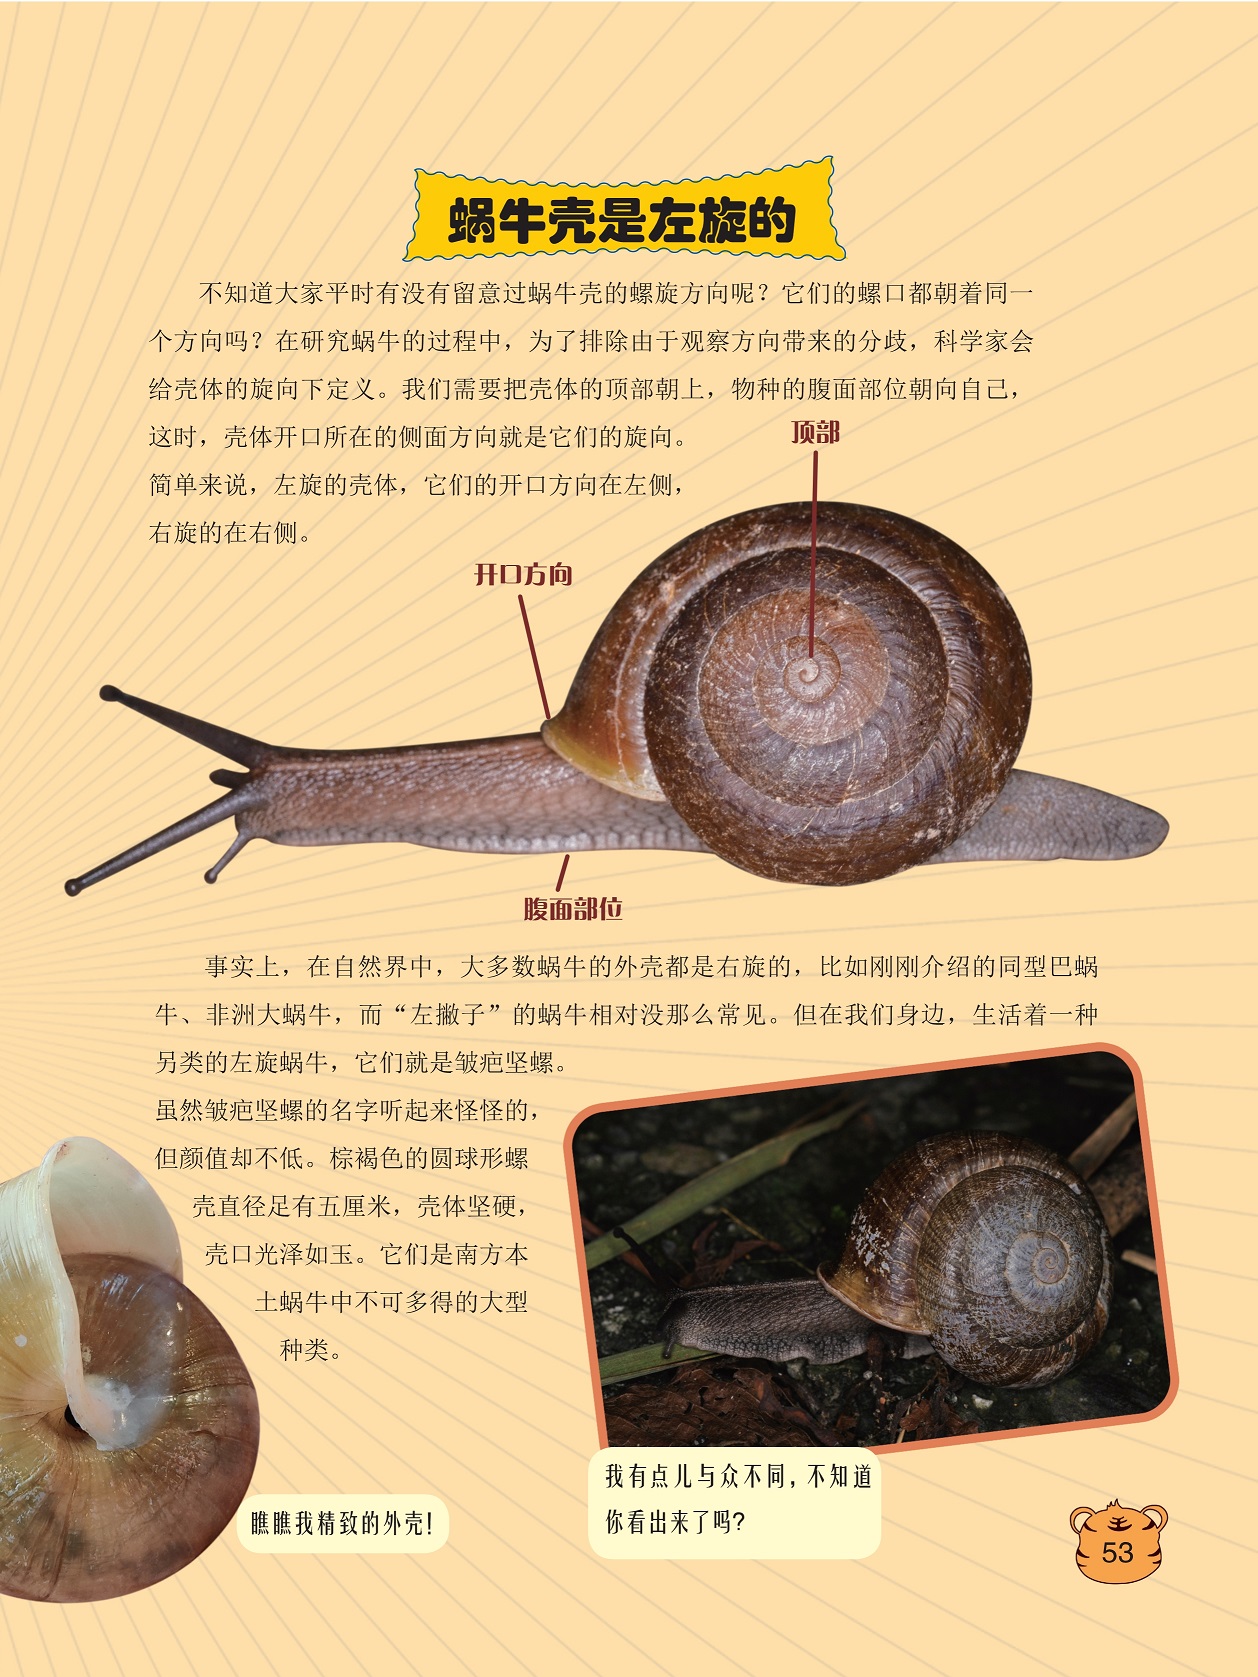 蜗牛壳是左旋的,科学家会给壳体的旋向下定义